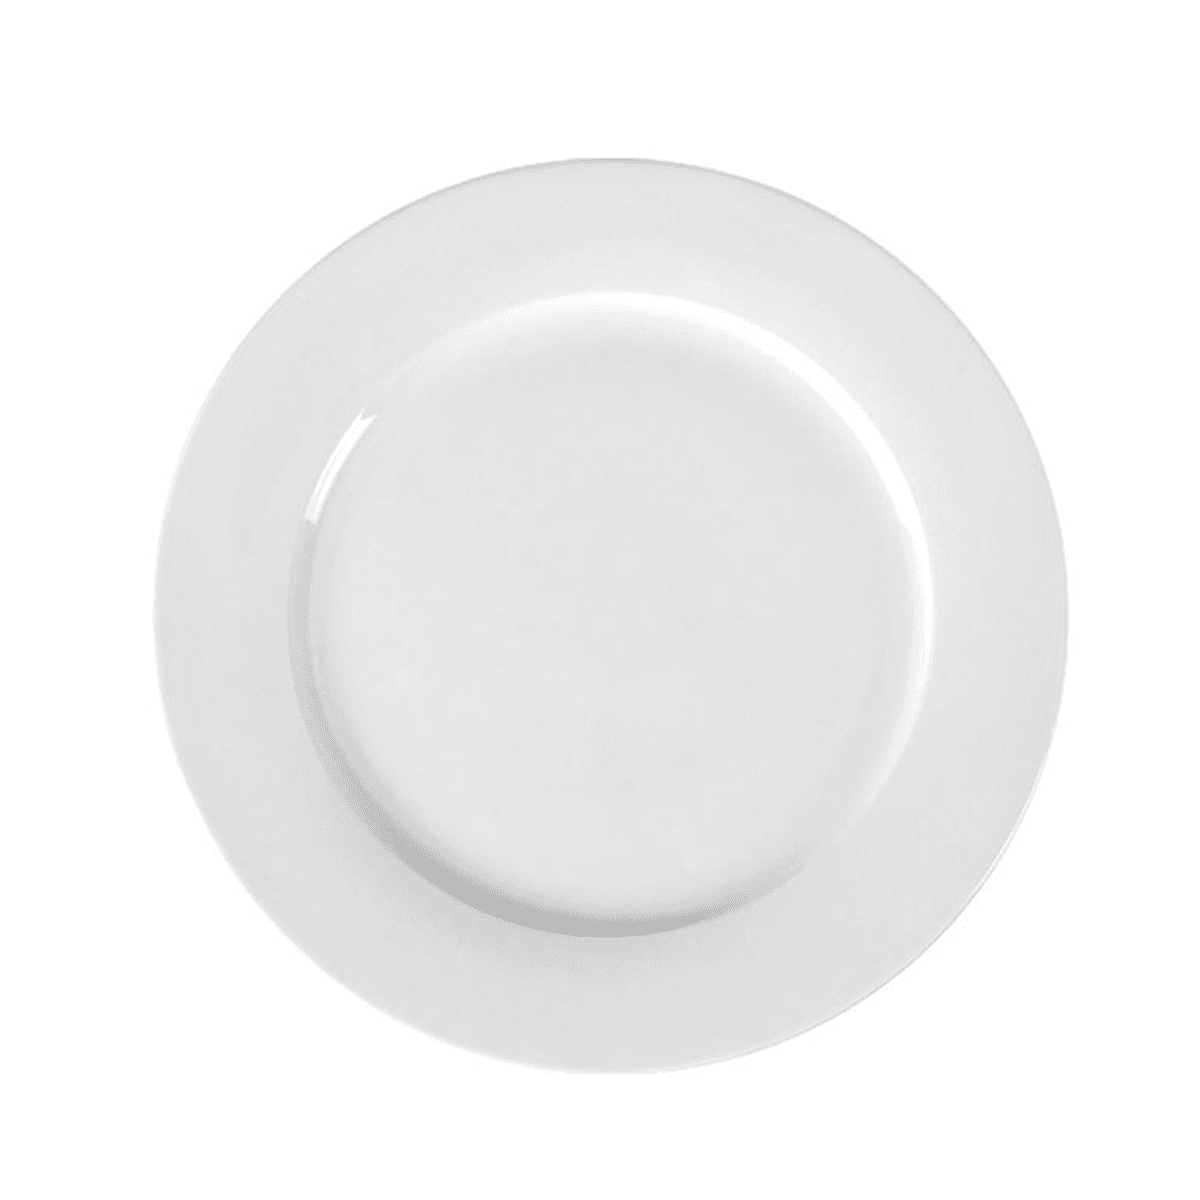 صحن مسطح بورسلان 21 سم 8 بوصة لون أبيض عاجي من بورسيلتا Porceletta Ivory Porcelain Flat Plate